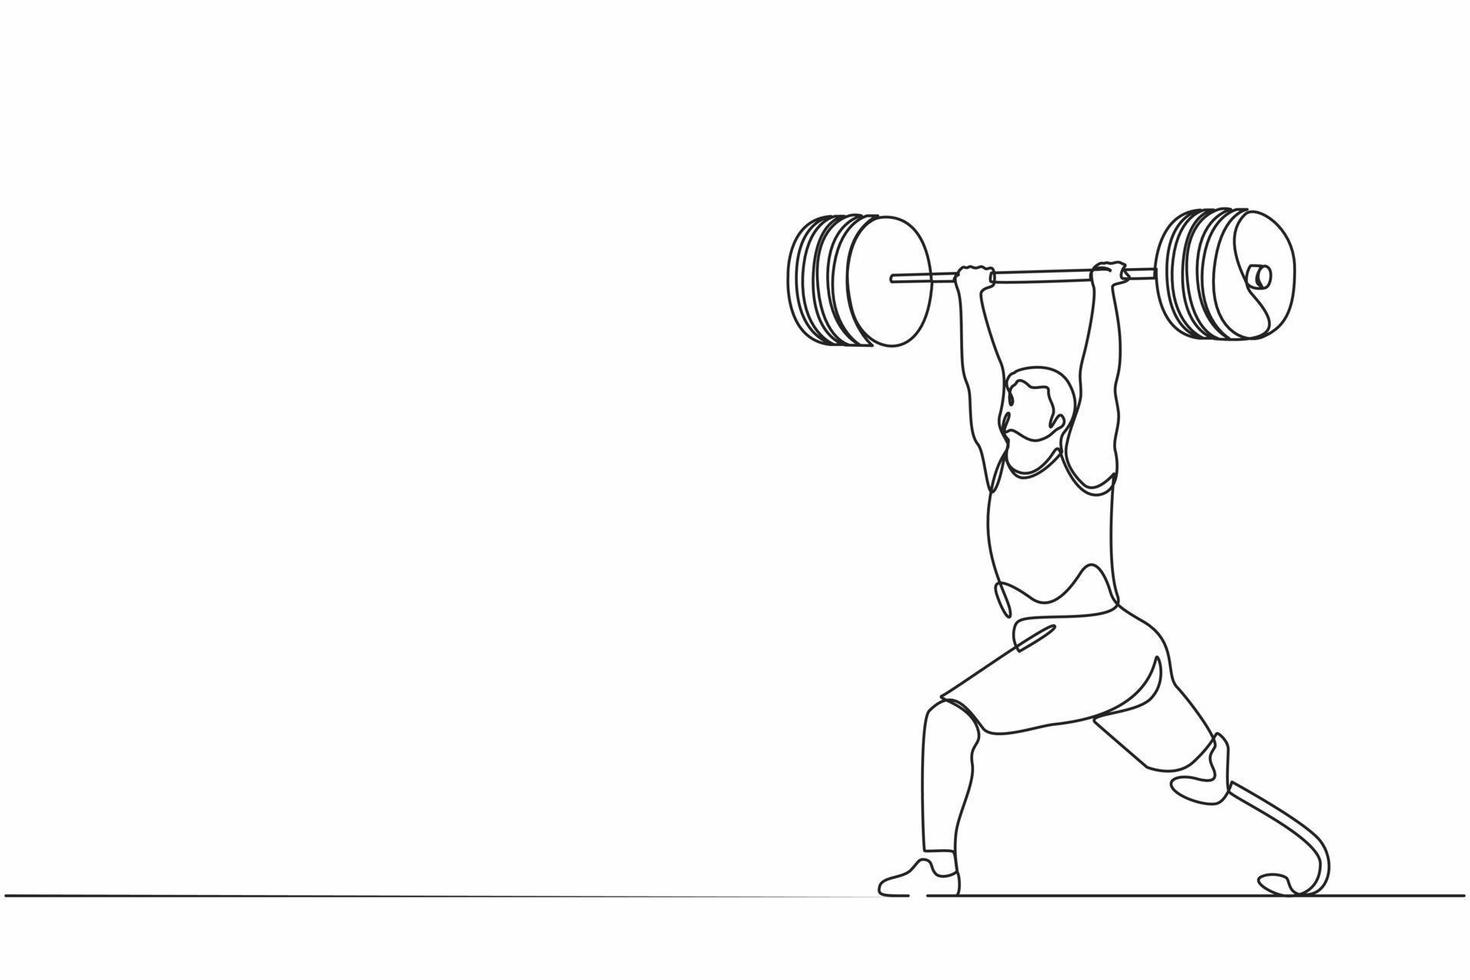 Discapacidad de dibujo de una línea continua levantador de pesas masculino levantando pesas. entrenamiento de deportista discapacitado en el gimnasio. ejercicio profesional de levantamiento de pesas. ilustración gráfica de vector de diseño de dibujo de una sola línea